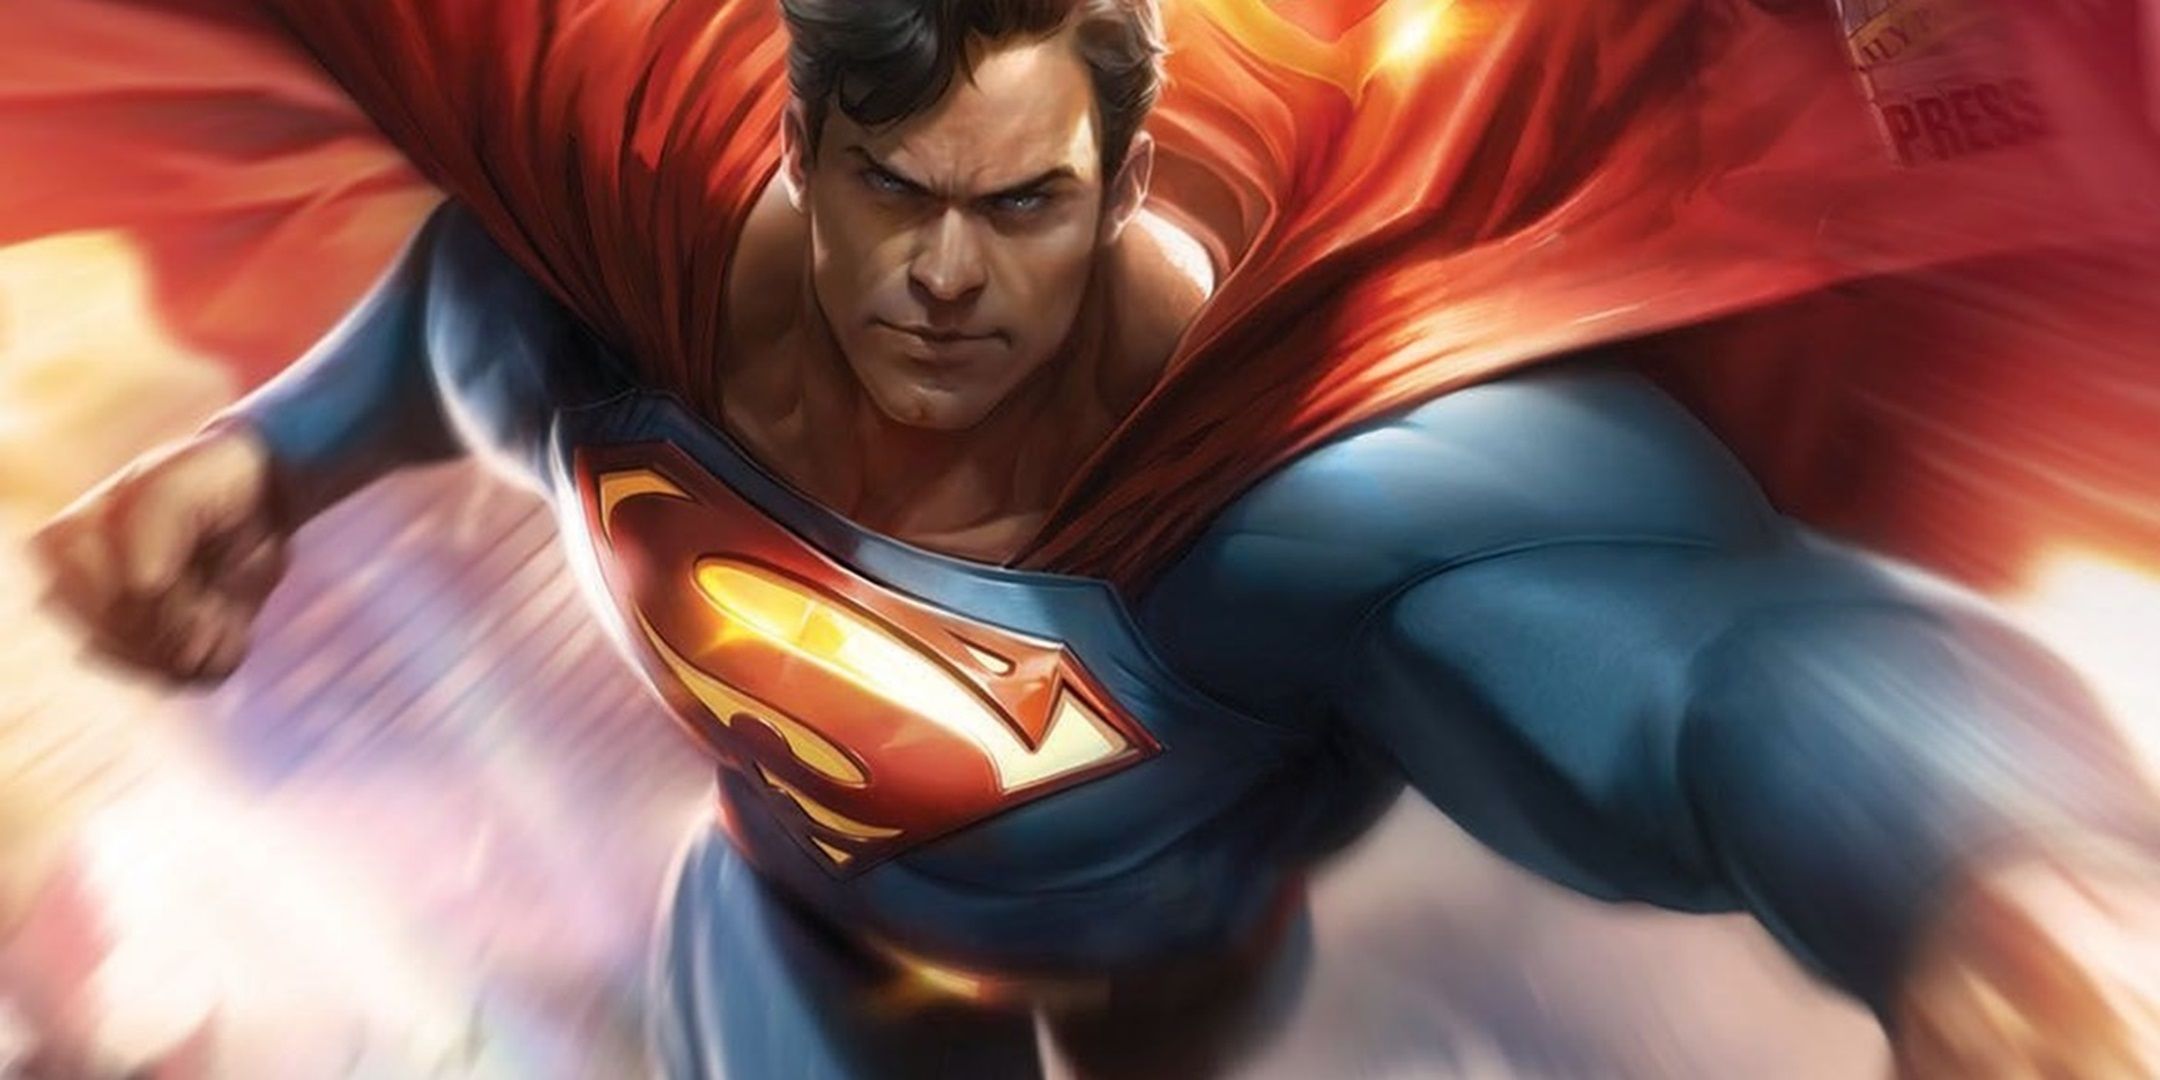 A Francesco Mattina drawing of Superman